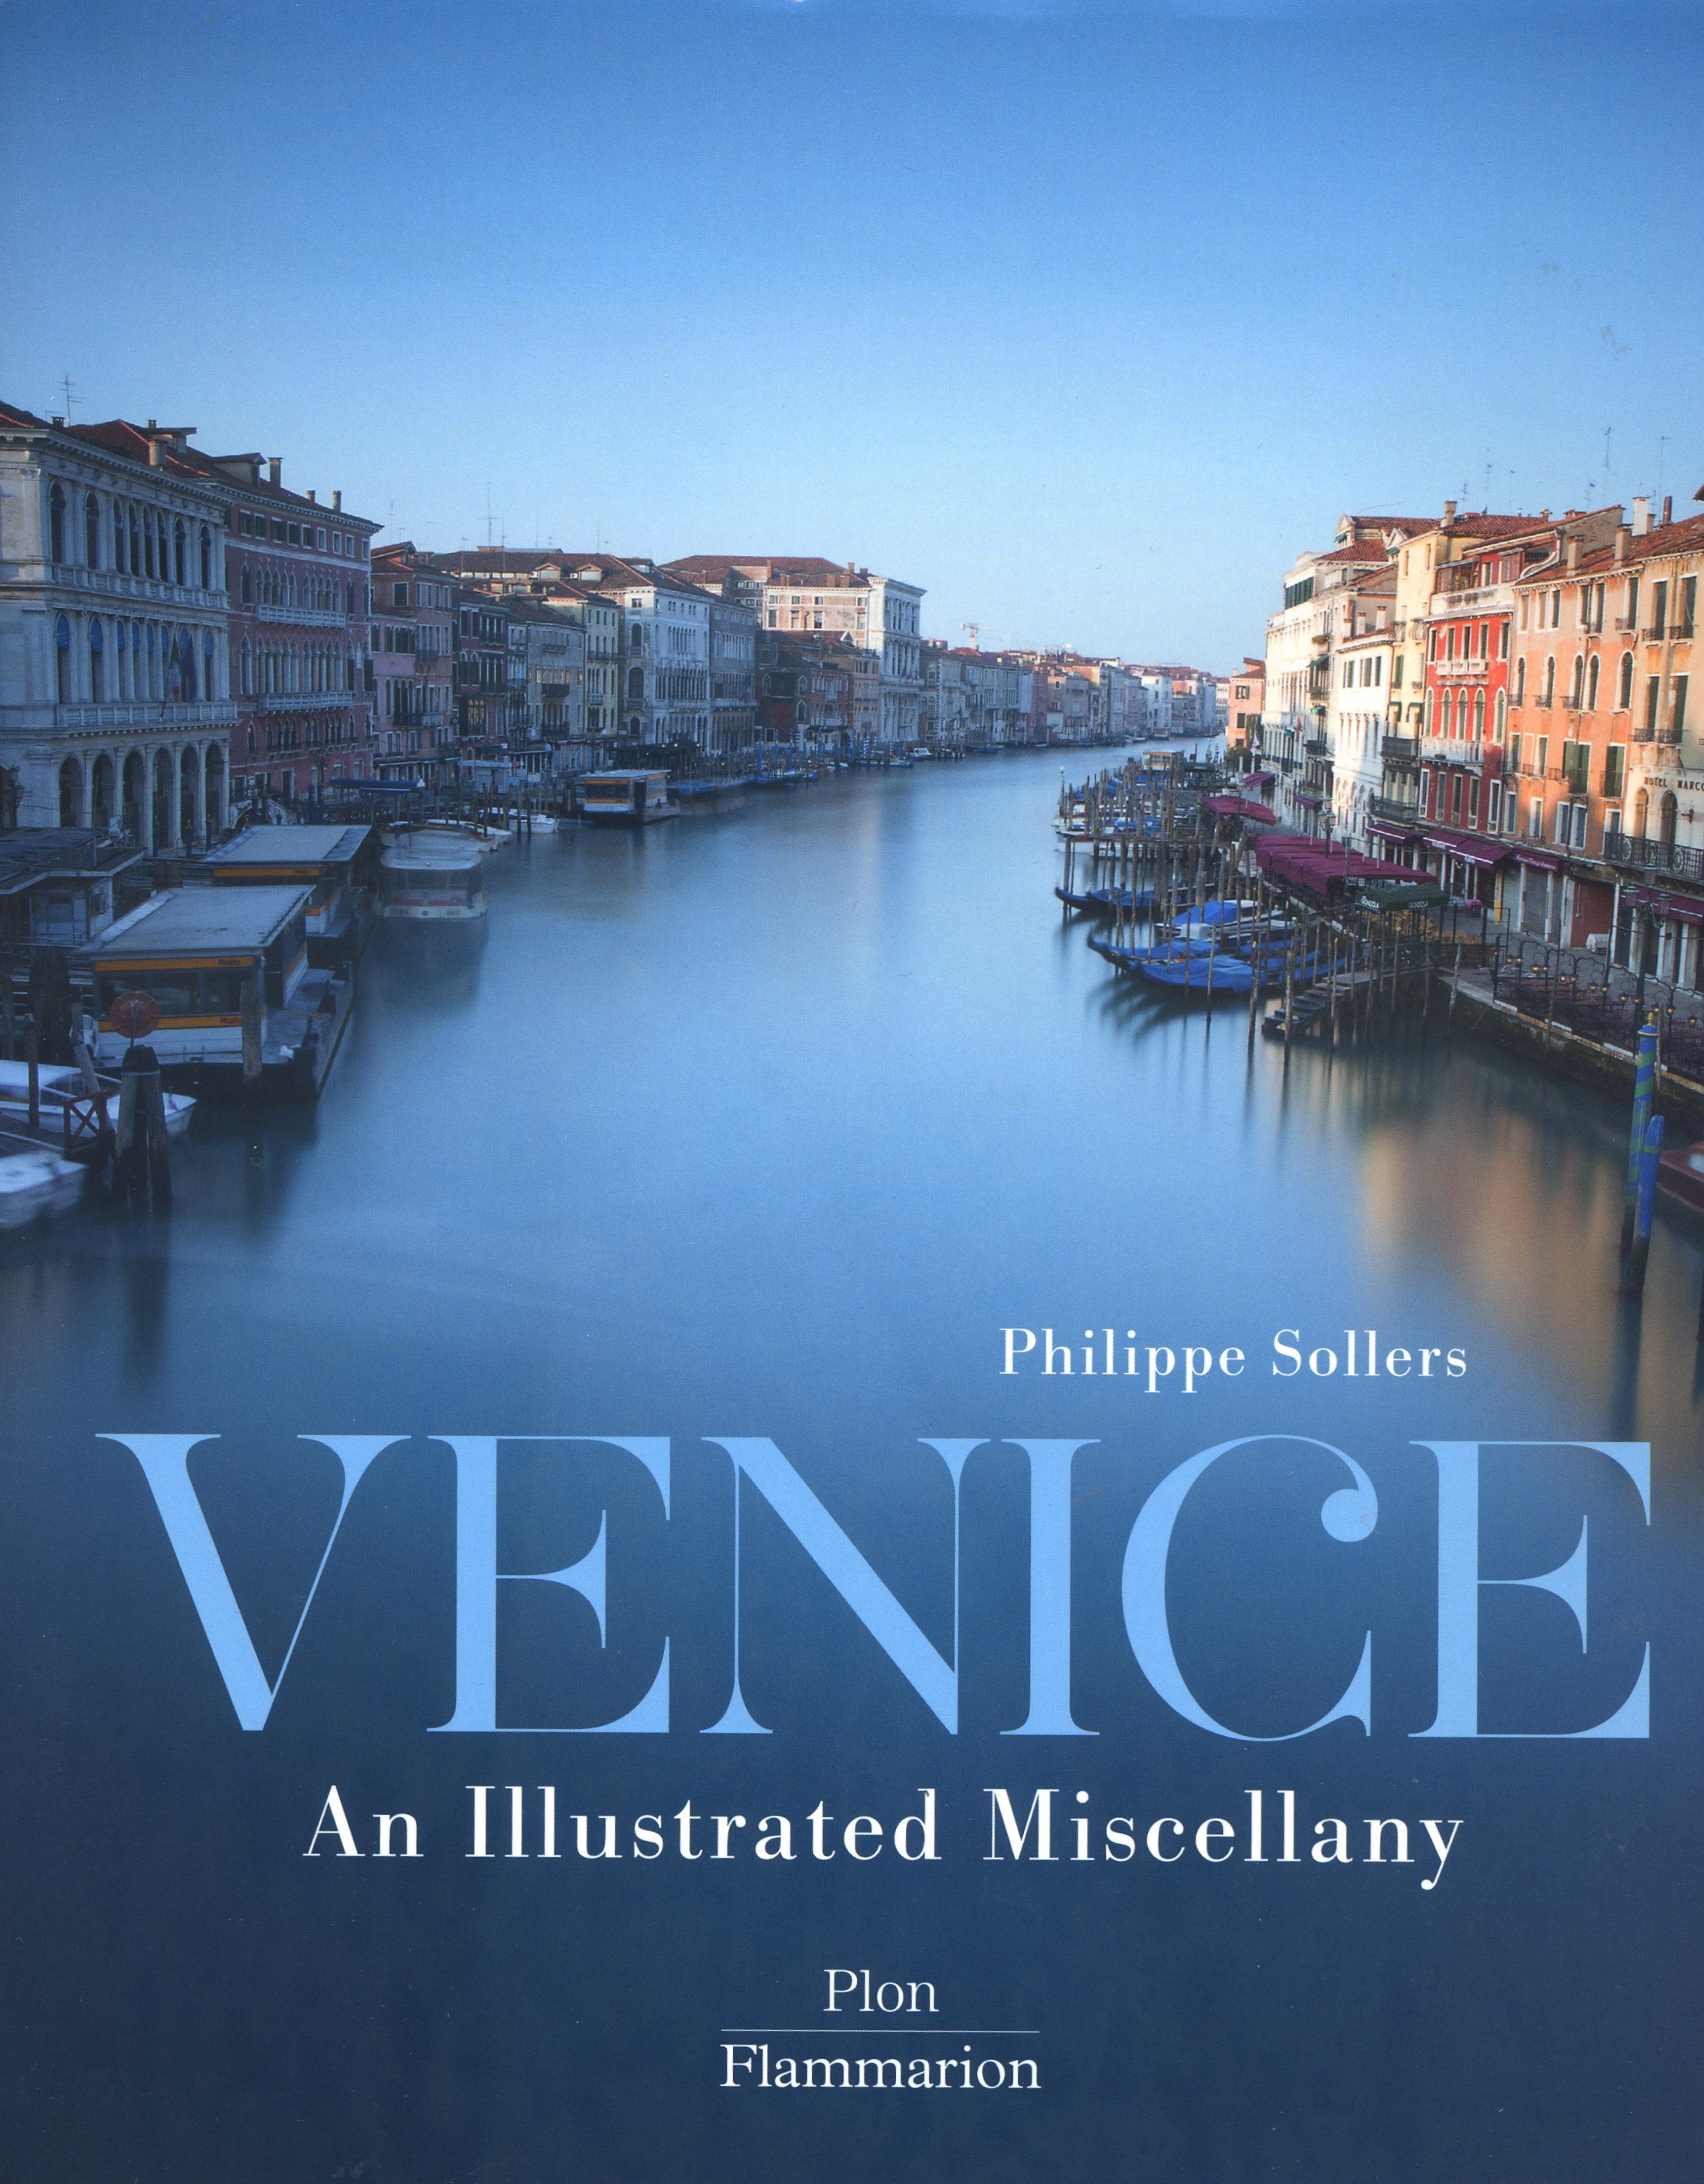 Philippe Sollers  Dictionnaire amoureux de Venise version illustree